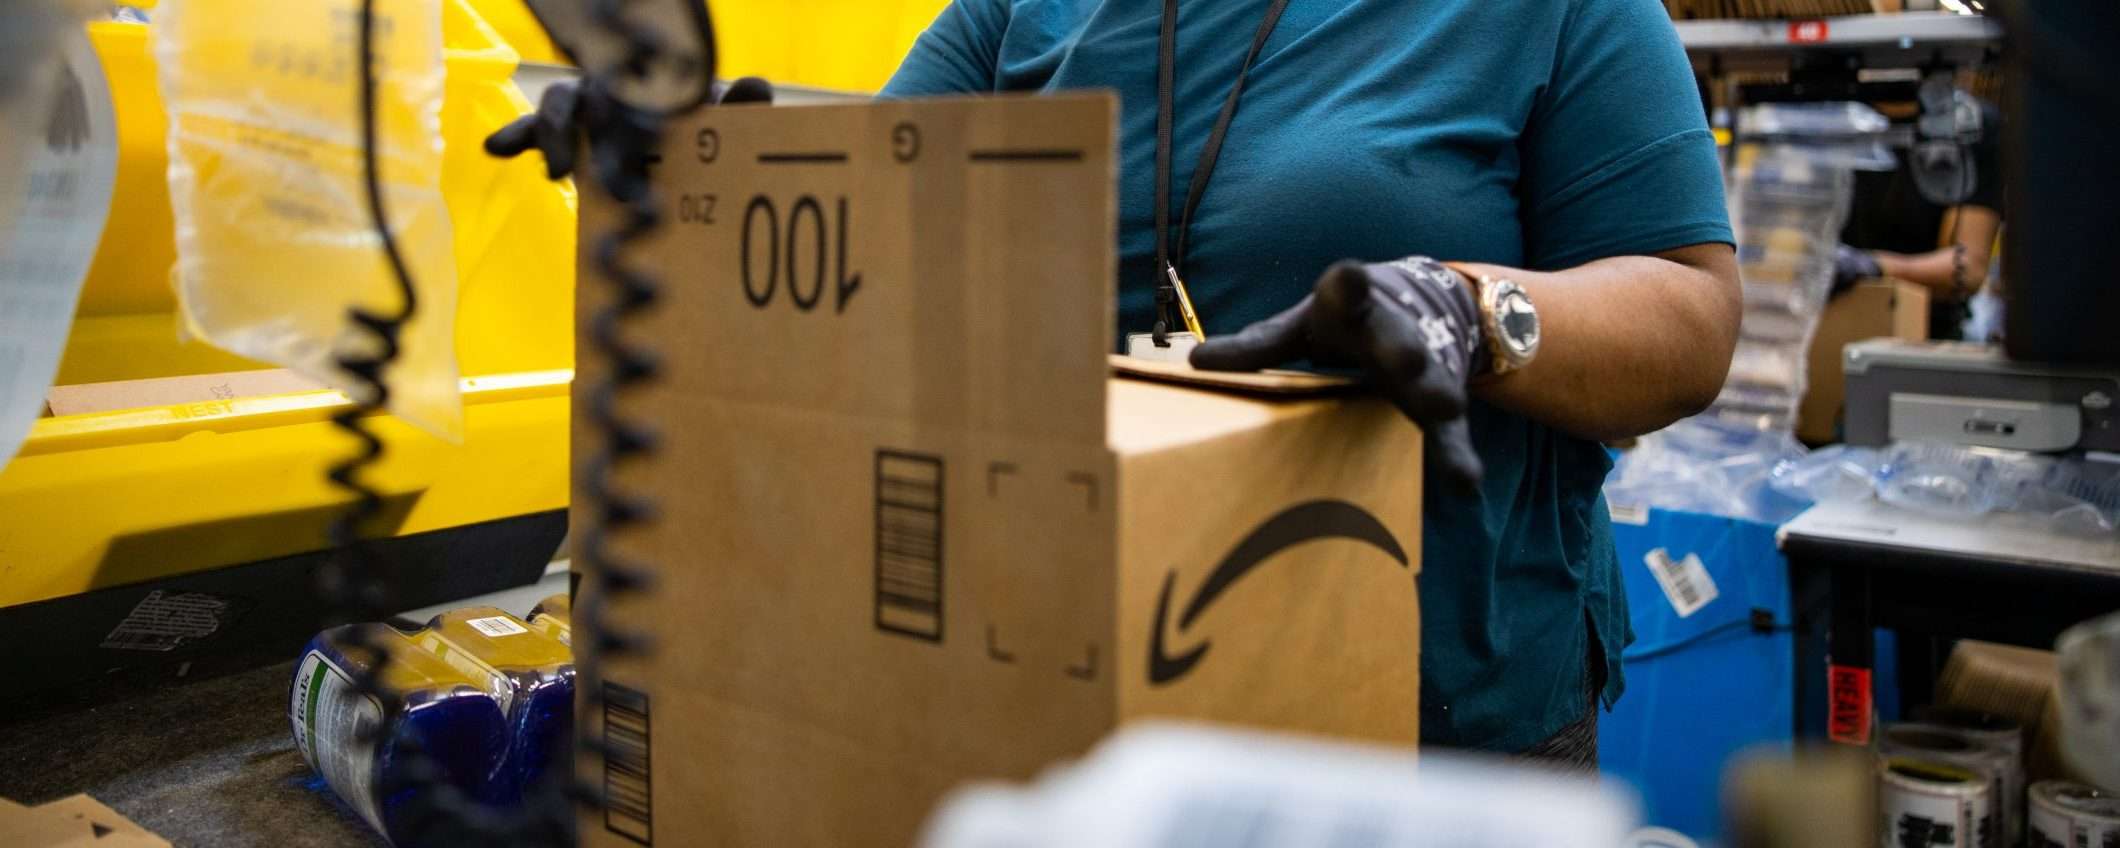 Amazon assumerà 3.000 persone entro il 2022